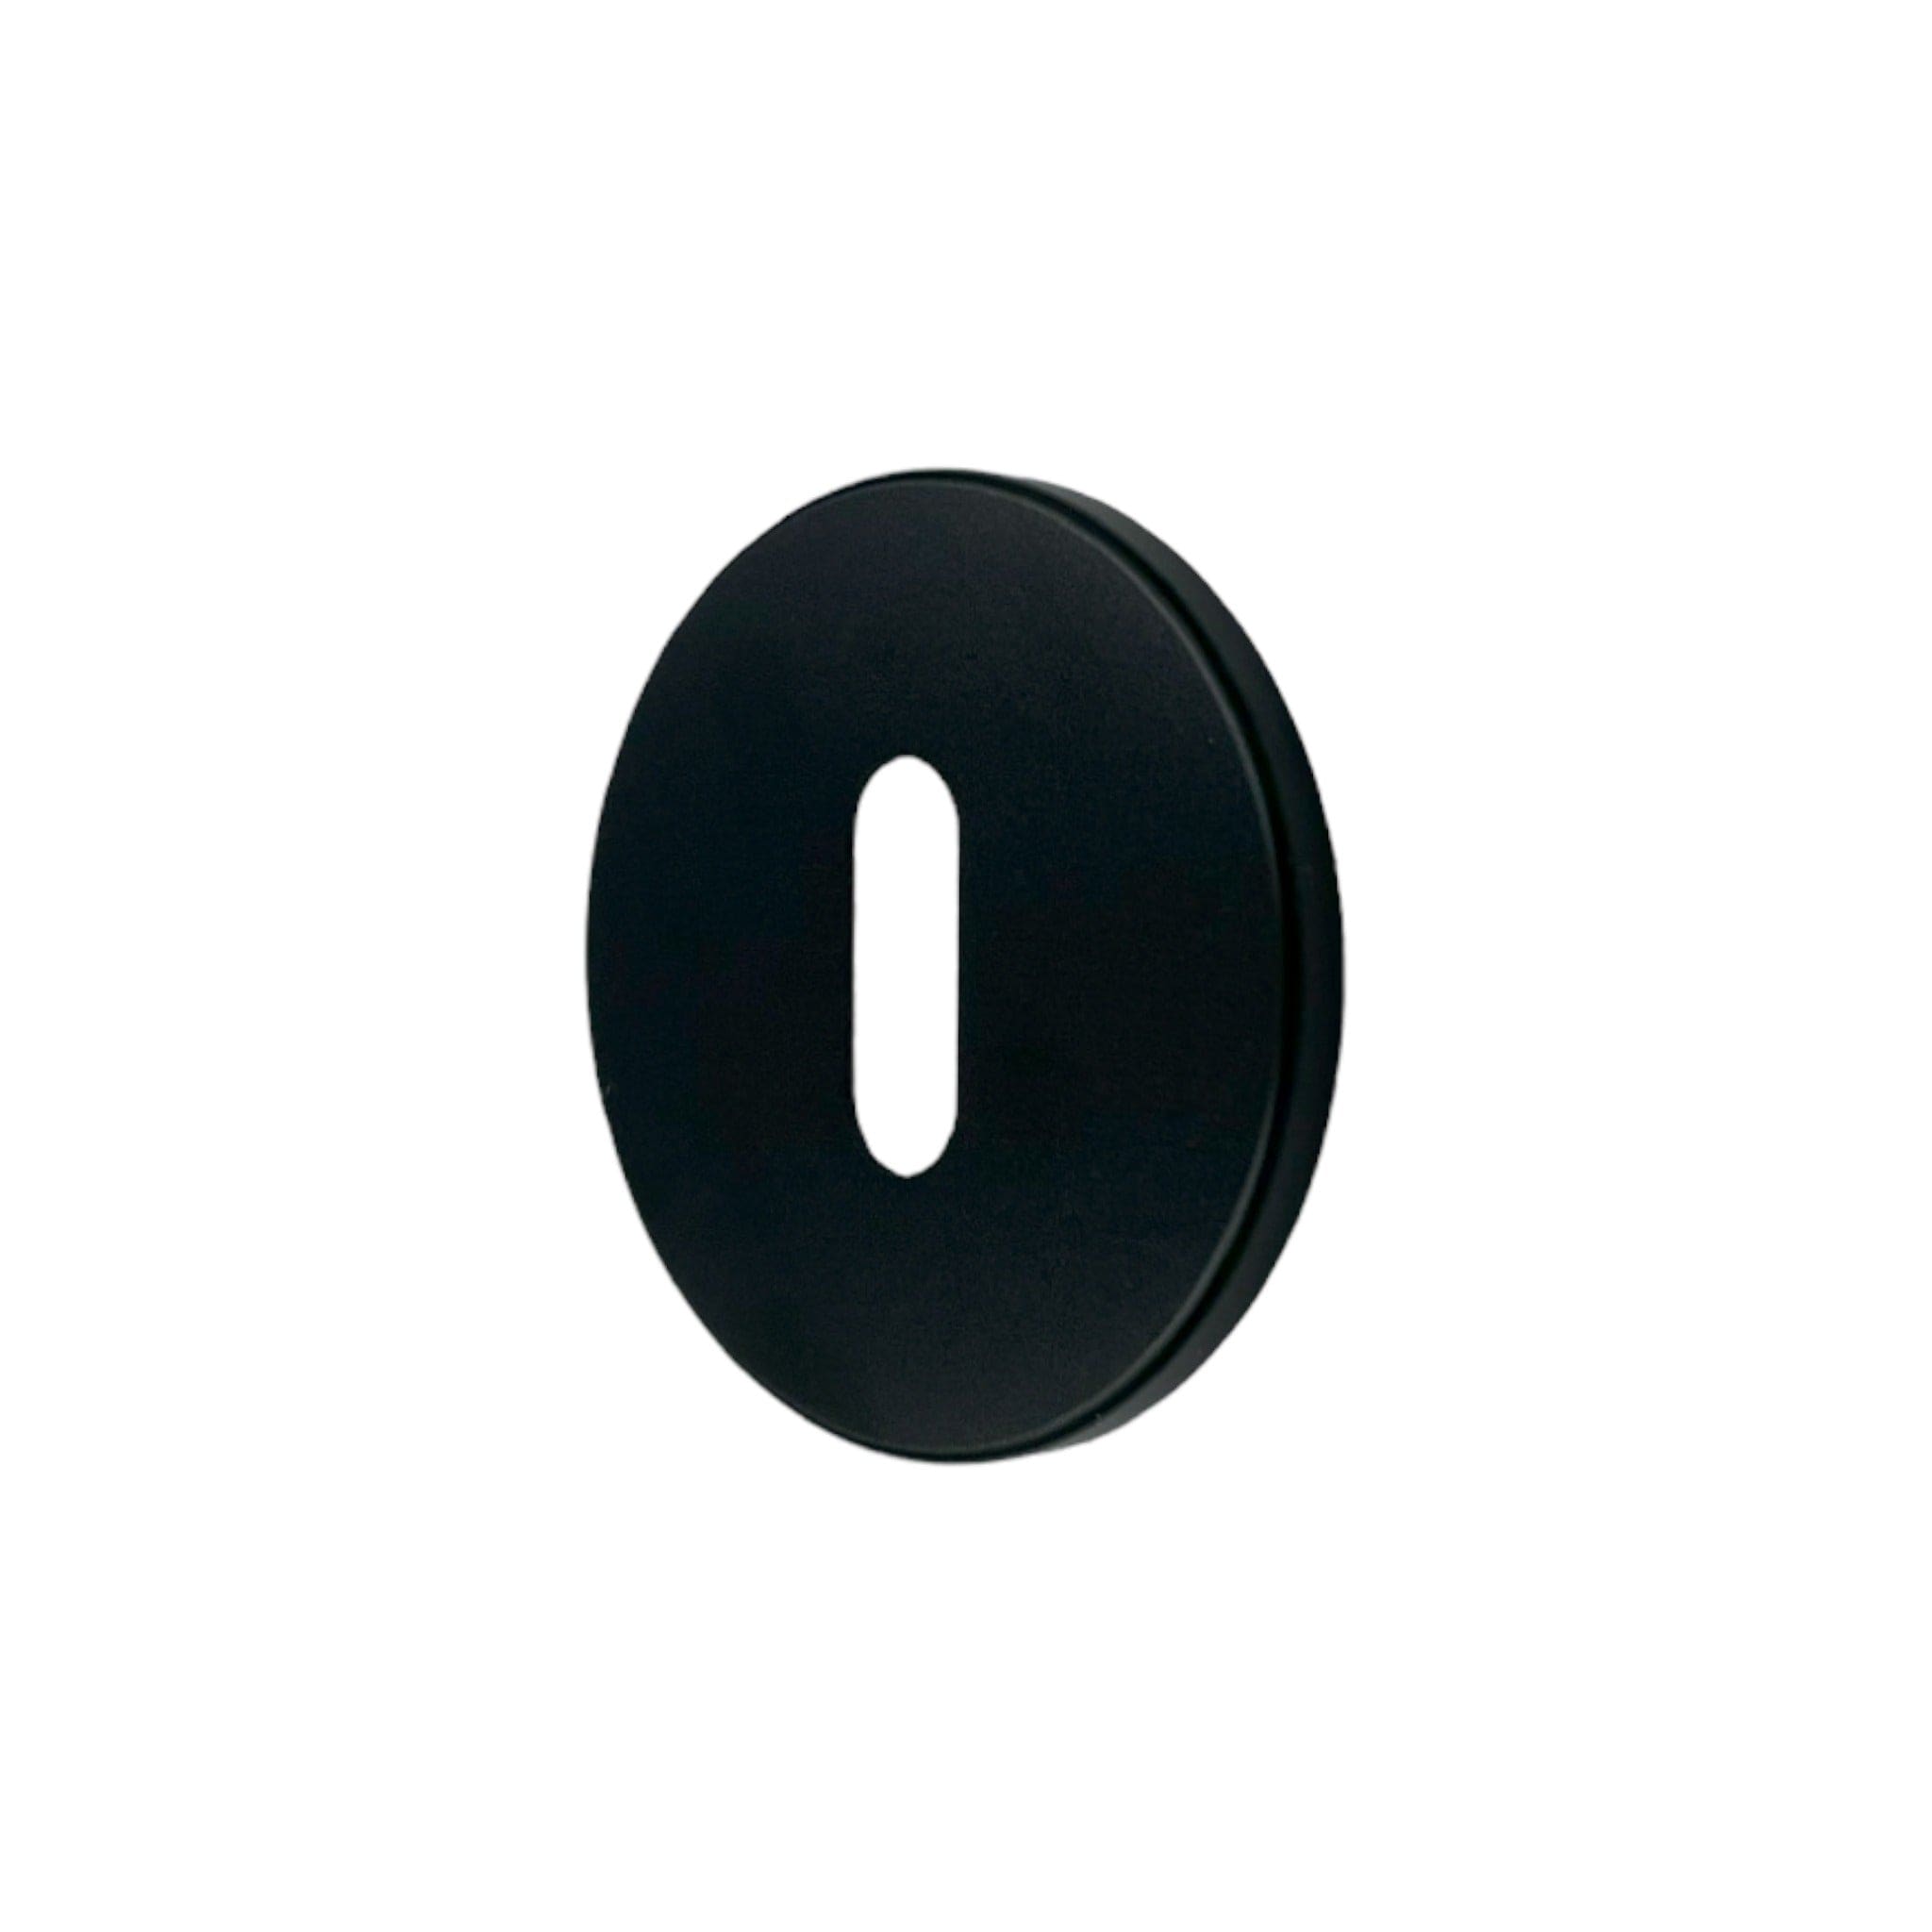 Linear Oval | Nøgleskilt i Sort (Welders Black) Ø 51 mm (C/C: 27 mm) Buster + Punch BP-SES-591876 FINICC